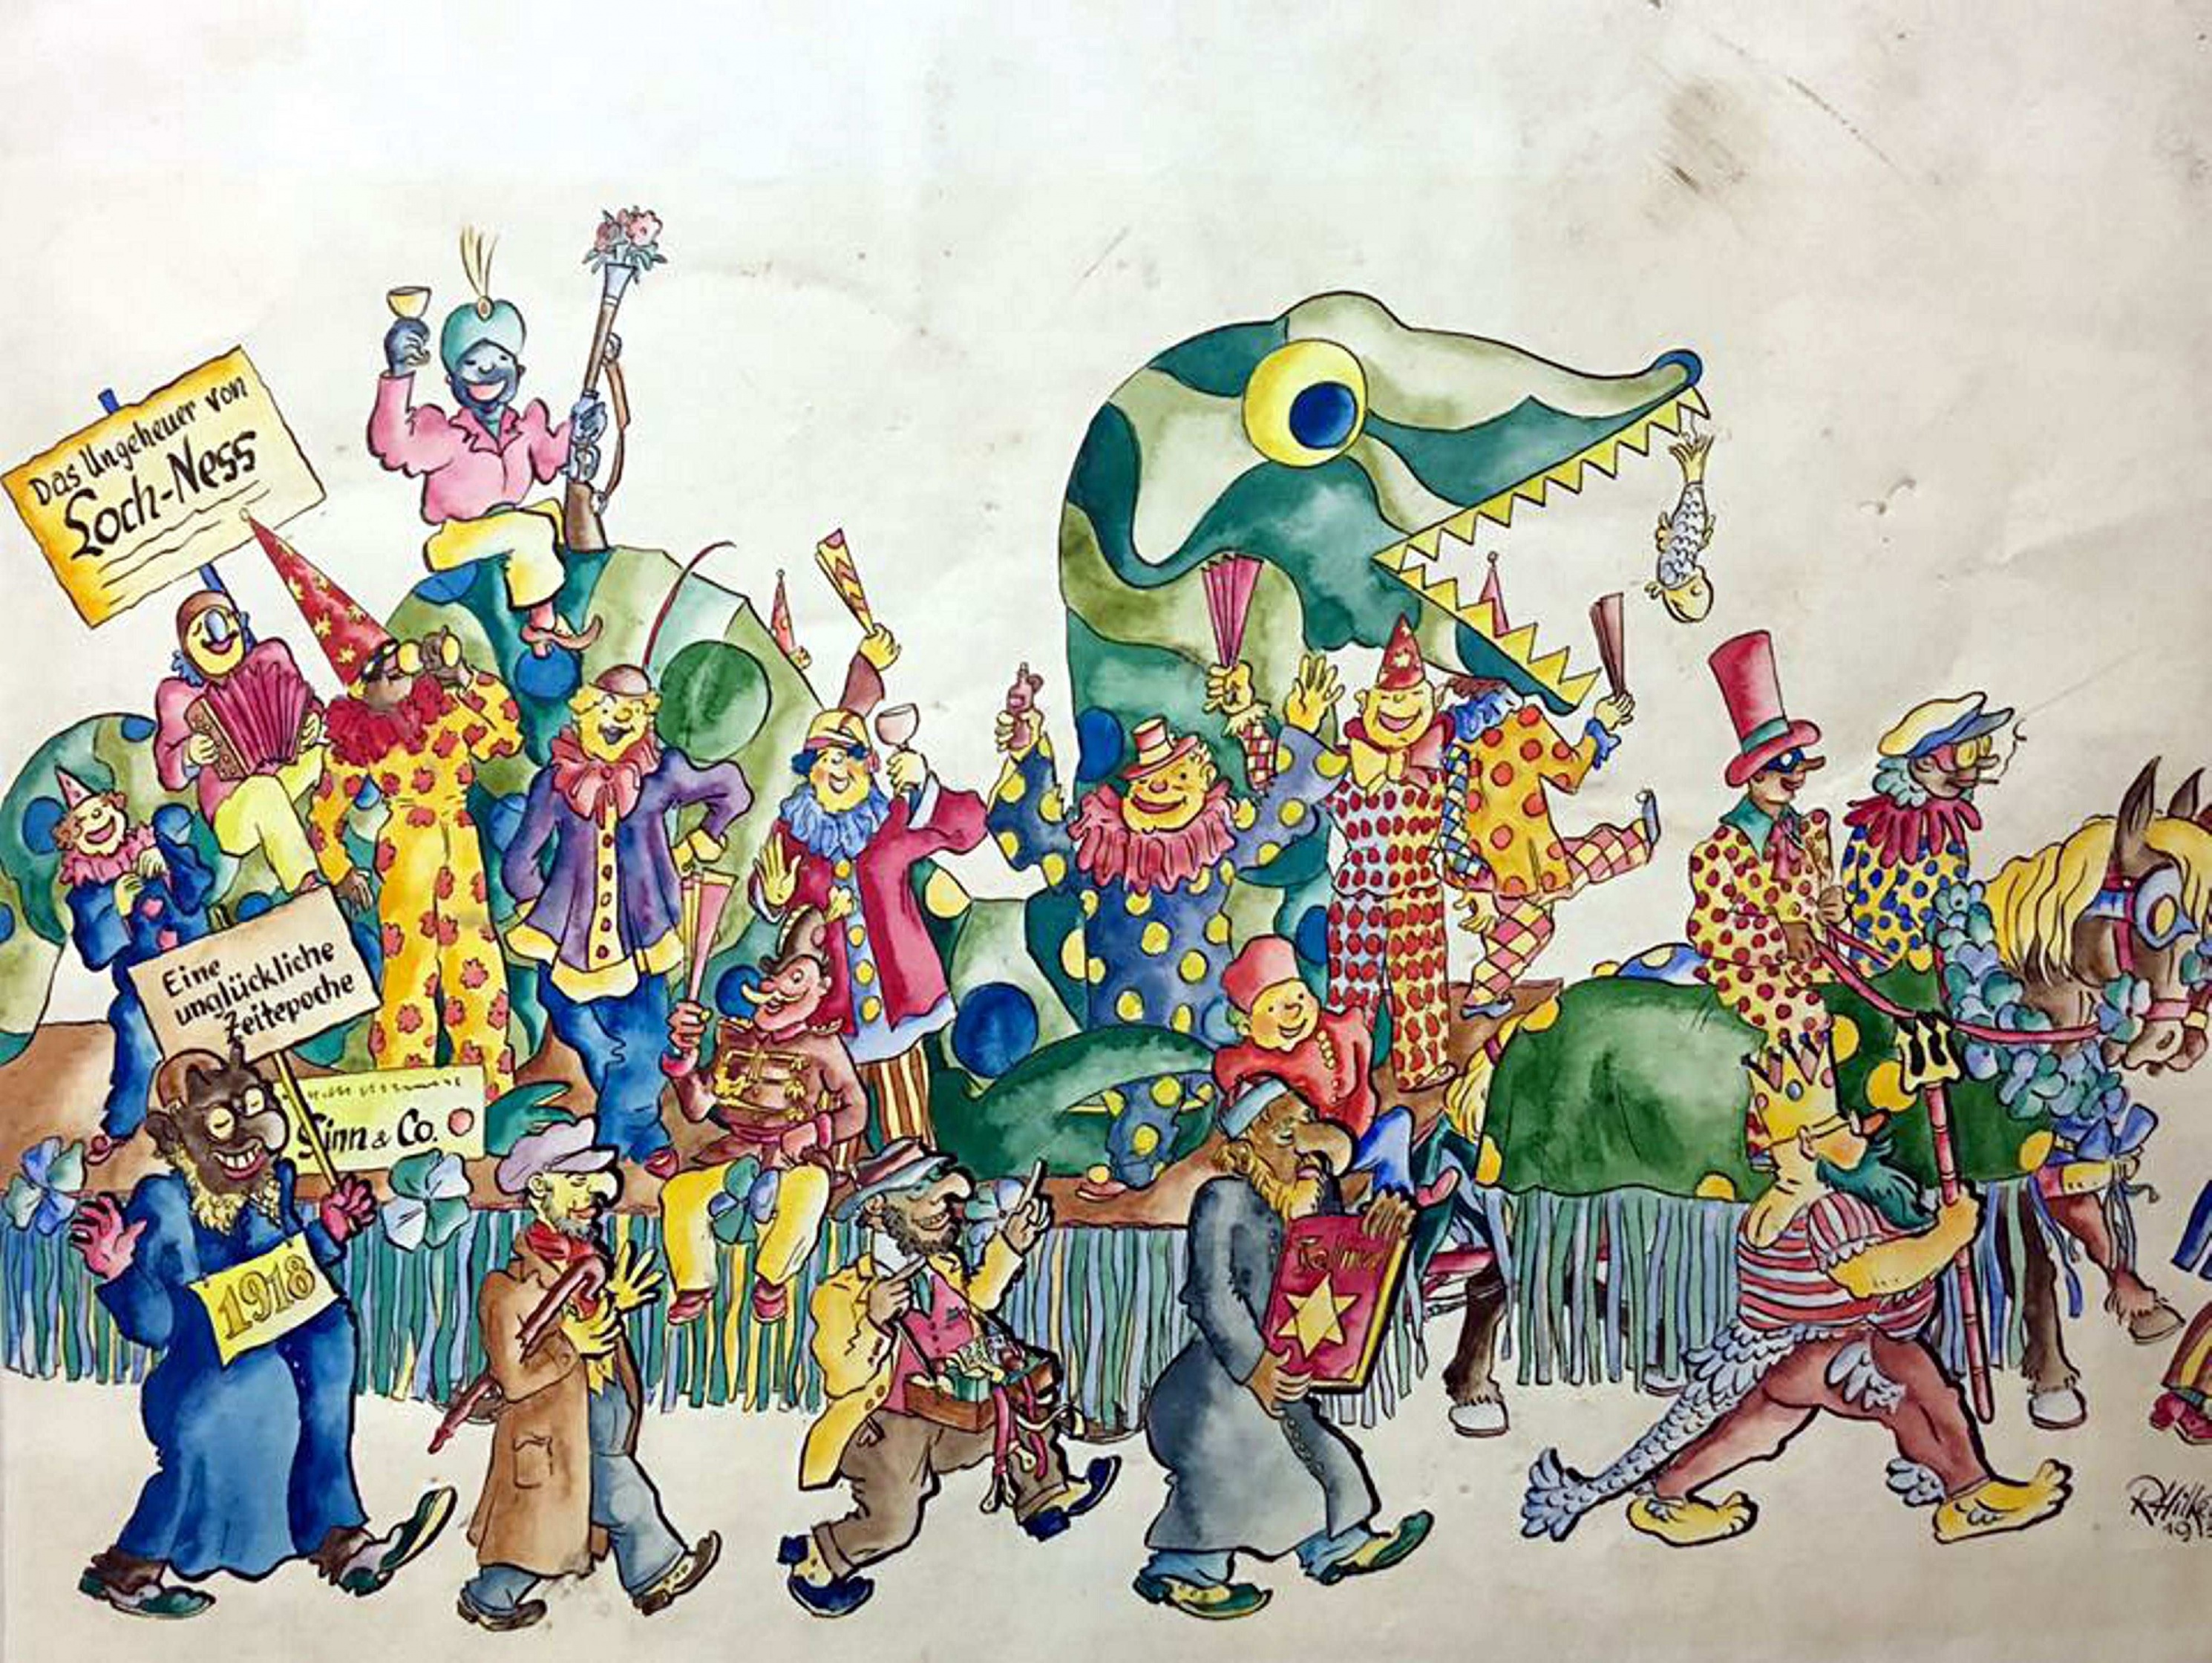 Zeichnung: Erster Hagener Karnevalszug am 4. März 1935 (Stadtmuseum Hagen RR-R)